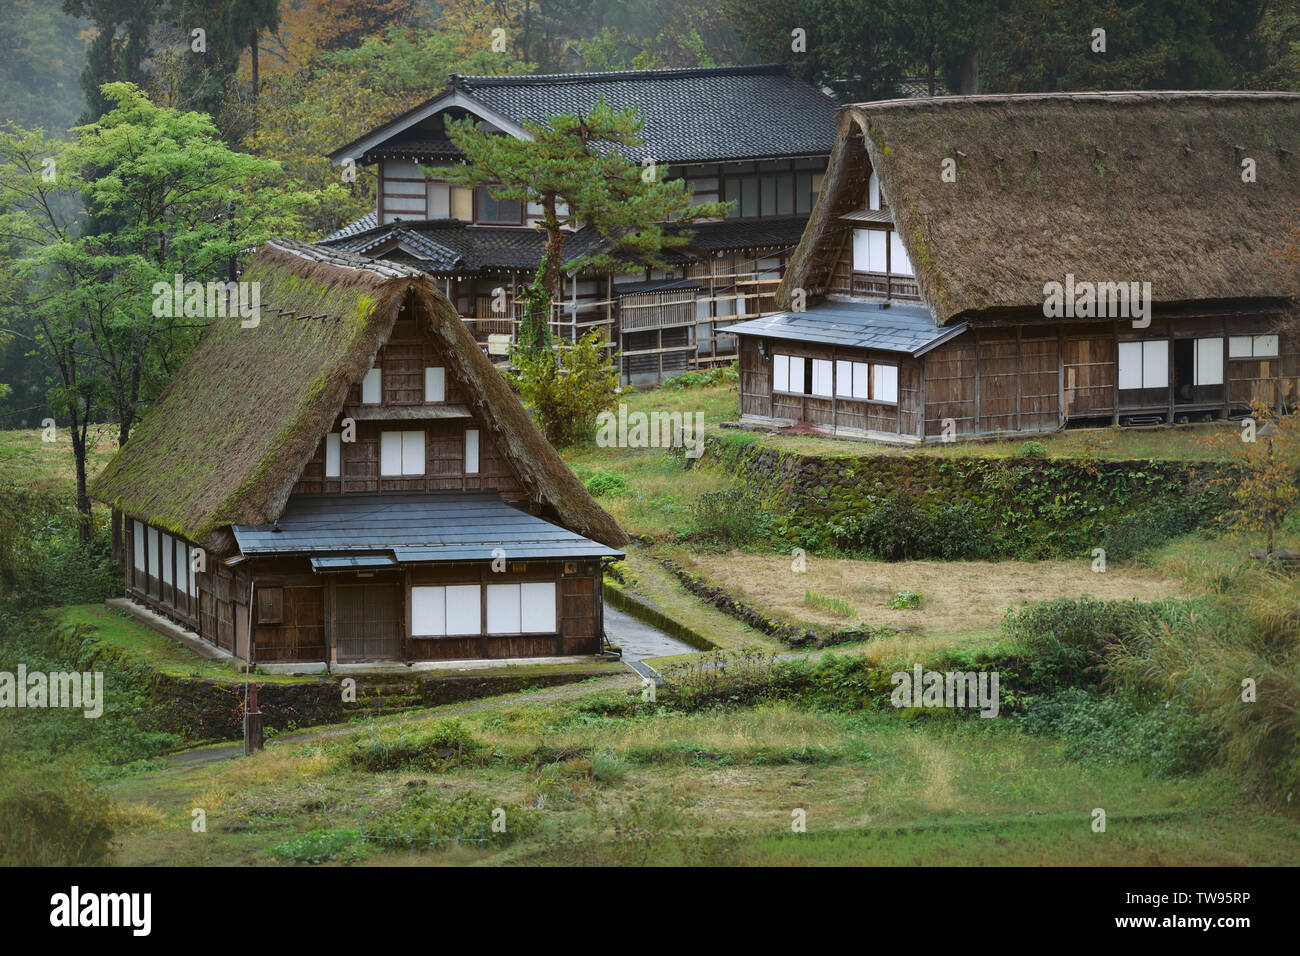 Licencia e impresiones en MaximImages.com - Ainokura, pueblo japonés con Gassho zukiri casas rurales tradicionales. Toyama, Japón. Foto de stock